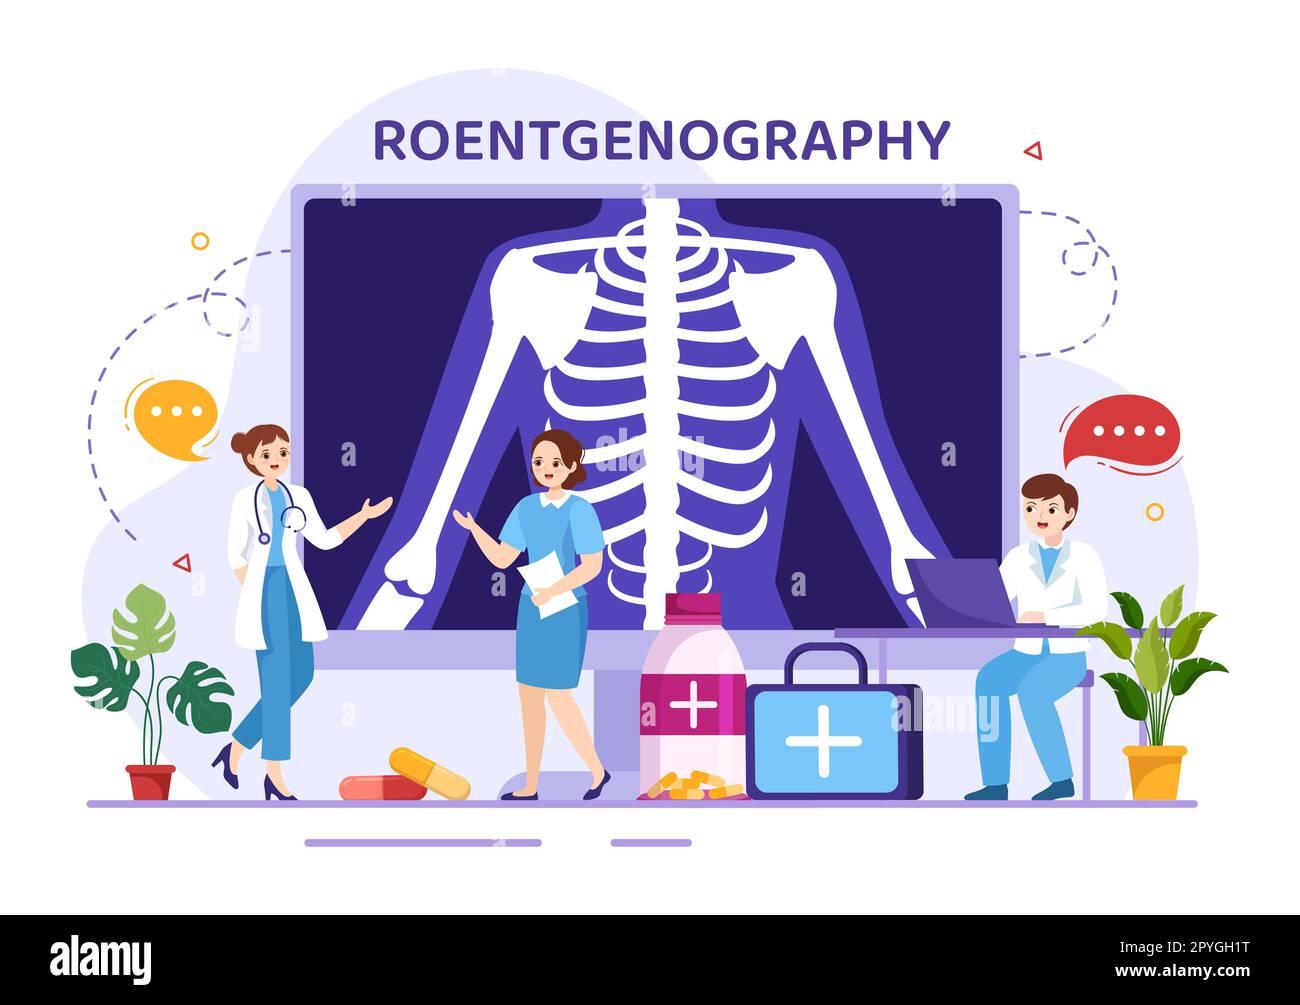 Röntgendarstellung mit Durchleuchtungs-Body-Check-Verfahren, Röntgen-Scanning oder Röntgen in Health Care Flat Cartoon handgezeichnete Vorlagen Stockfoto